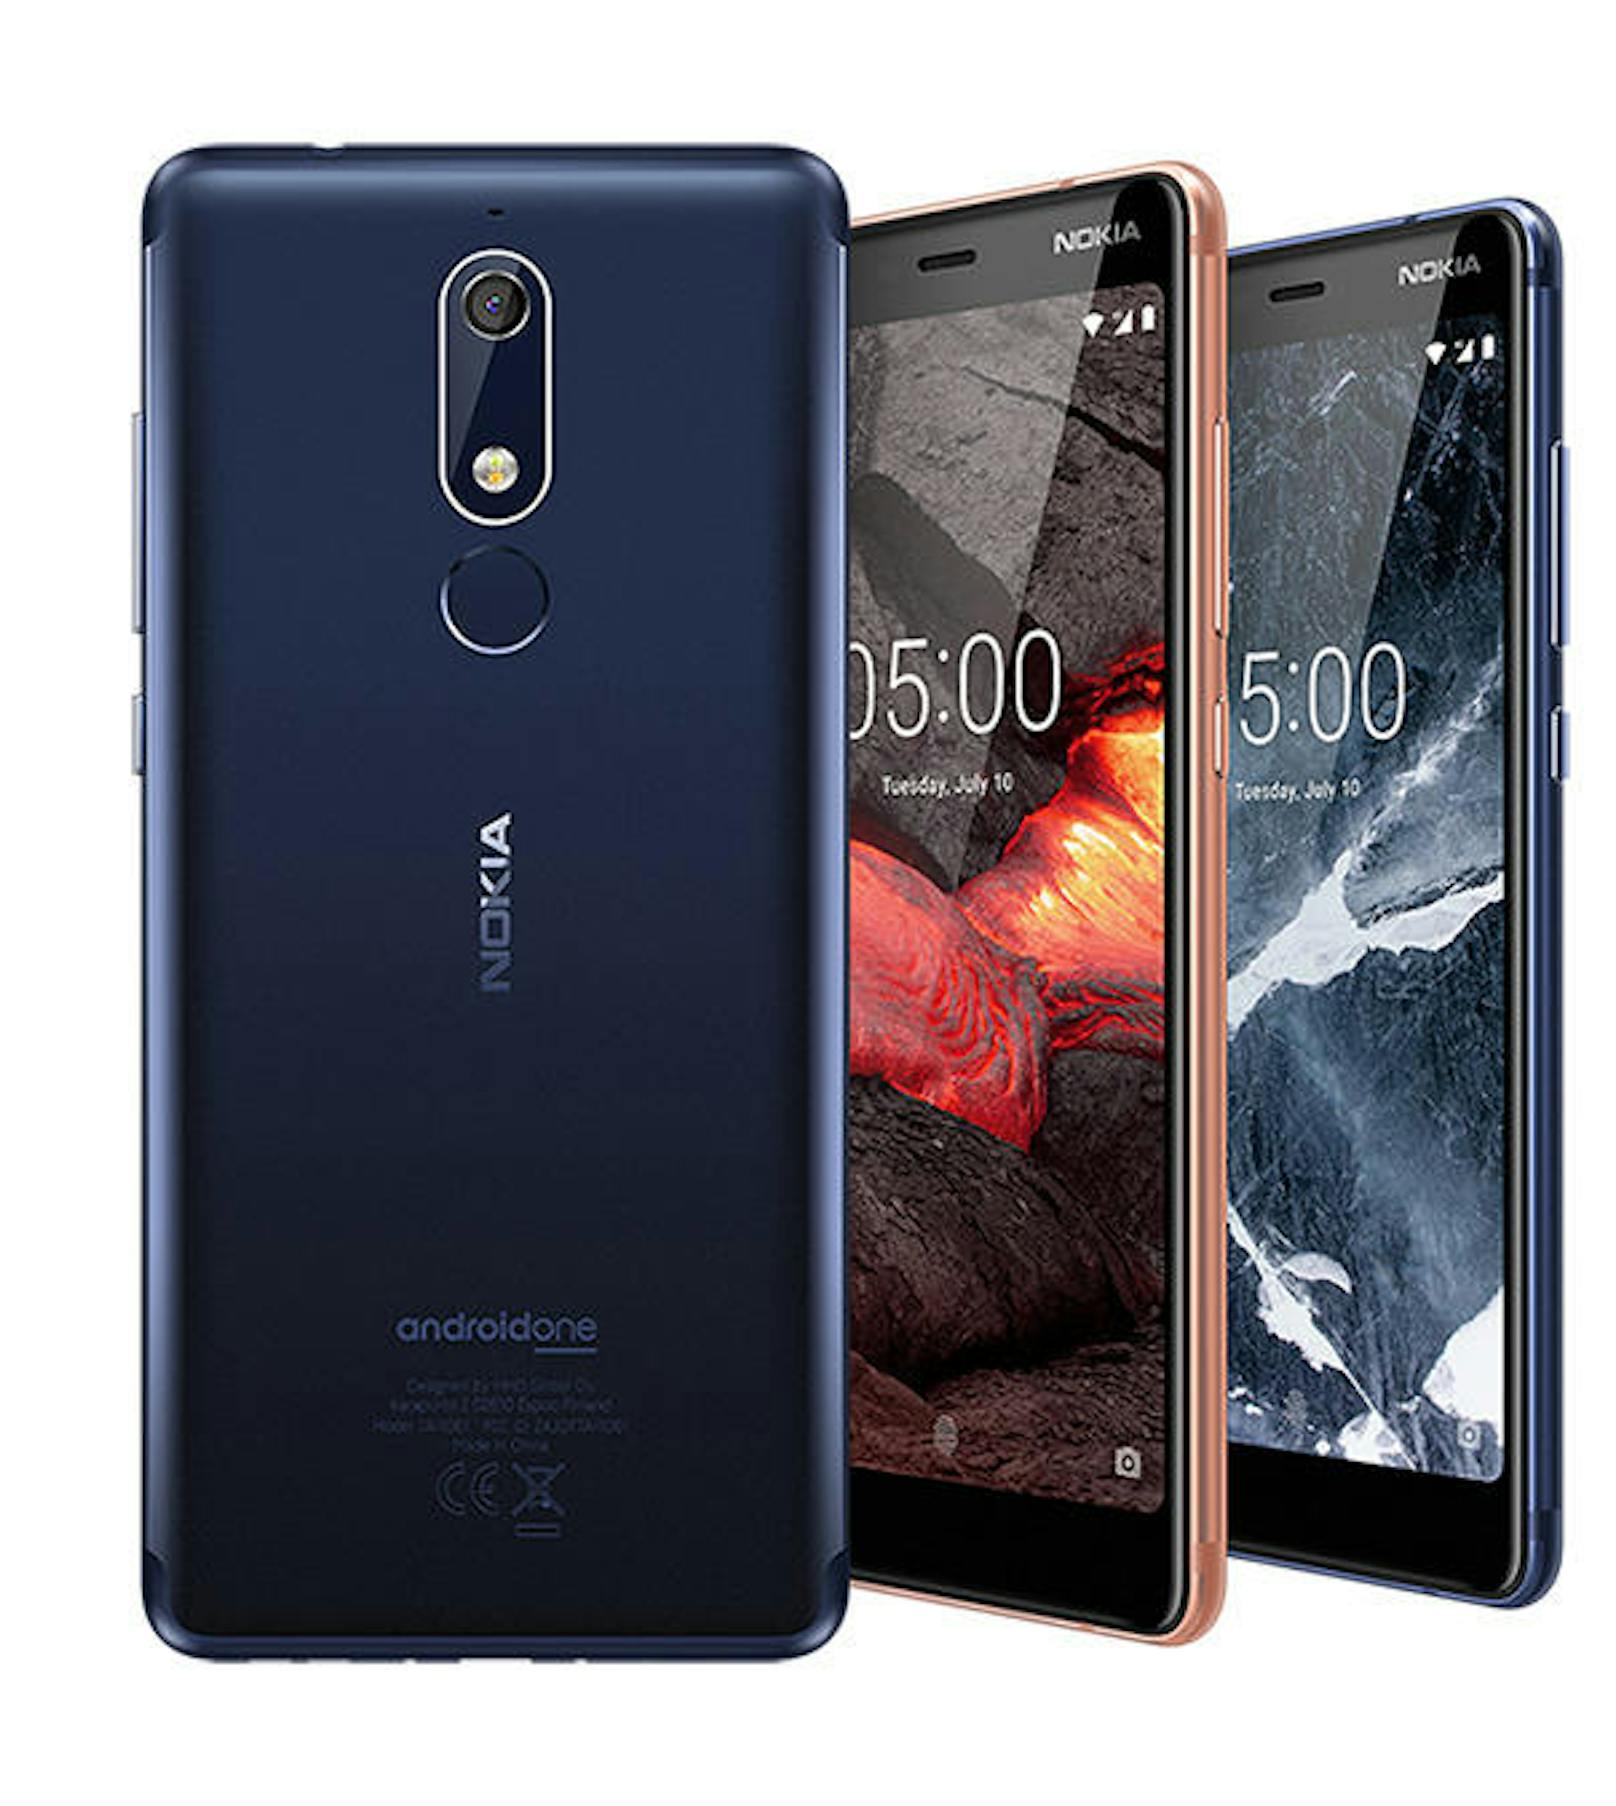 HMD Global, the Home of Nokia Phones, bringt nun auch das Nokia 5.1 nach Österreich: Ab sofort ist es in den Farben Tempered Blue und Black erhältlich, Copper folgt in Kürze. In diesen farblichen Hinguckern steckt eine 16MP-Kamera mit Phasenerkennungs-Autofokus und einem schnelleren Autofokus-System sowie einem Octa-Core-Prozessor. Kombiniert mit dem unveränderten Android ist das Nokia 5.1 stets sicher - und schnell, so das Versprechen. Kosten: ab 209 Euro.